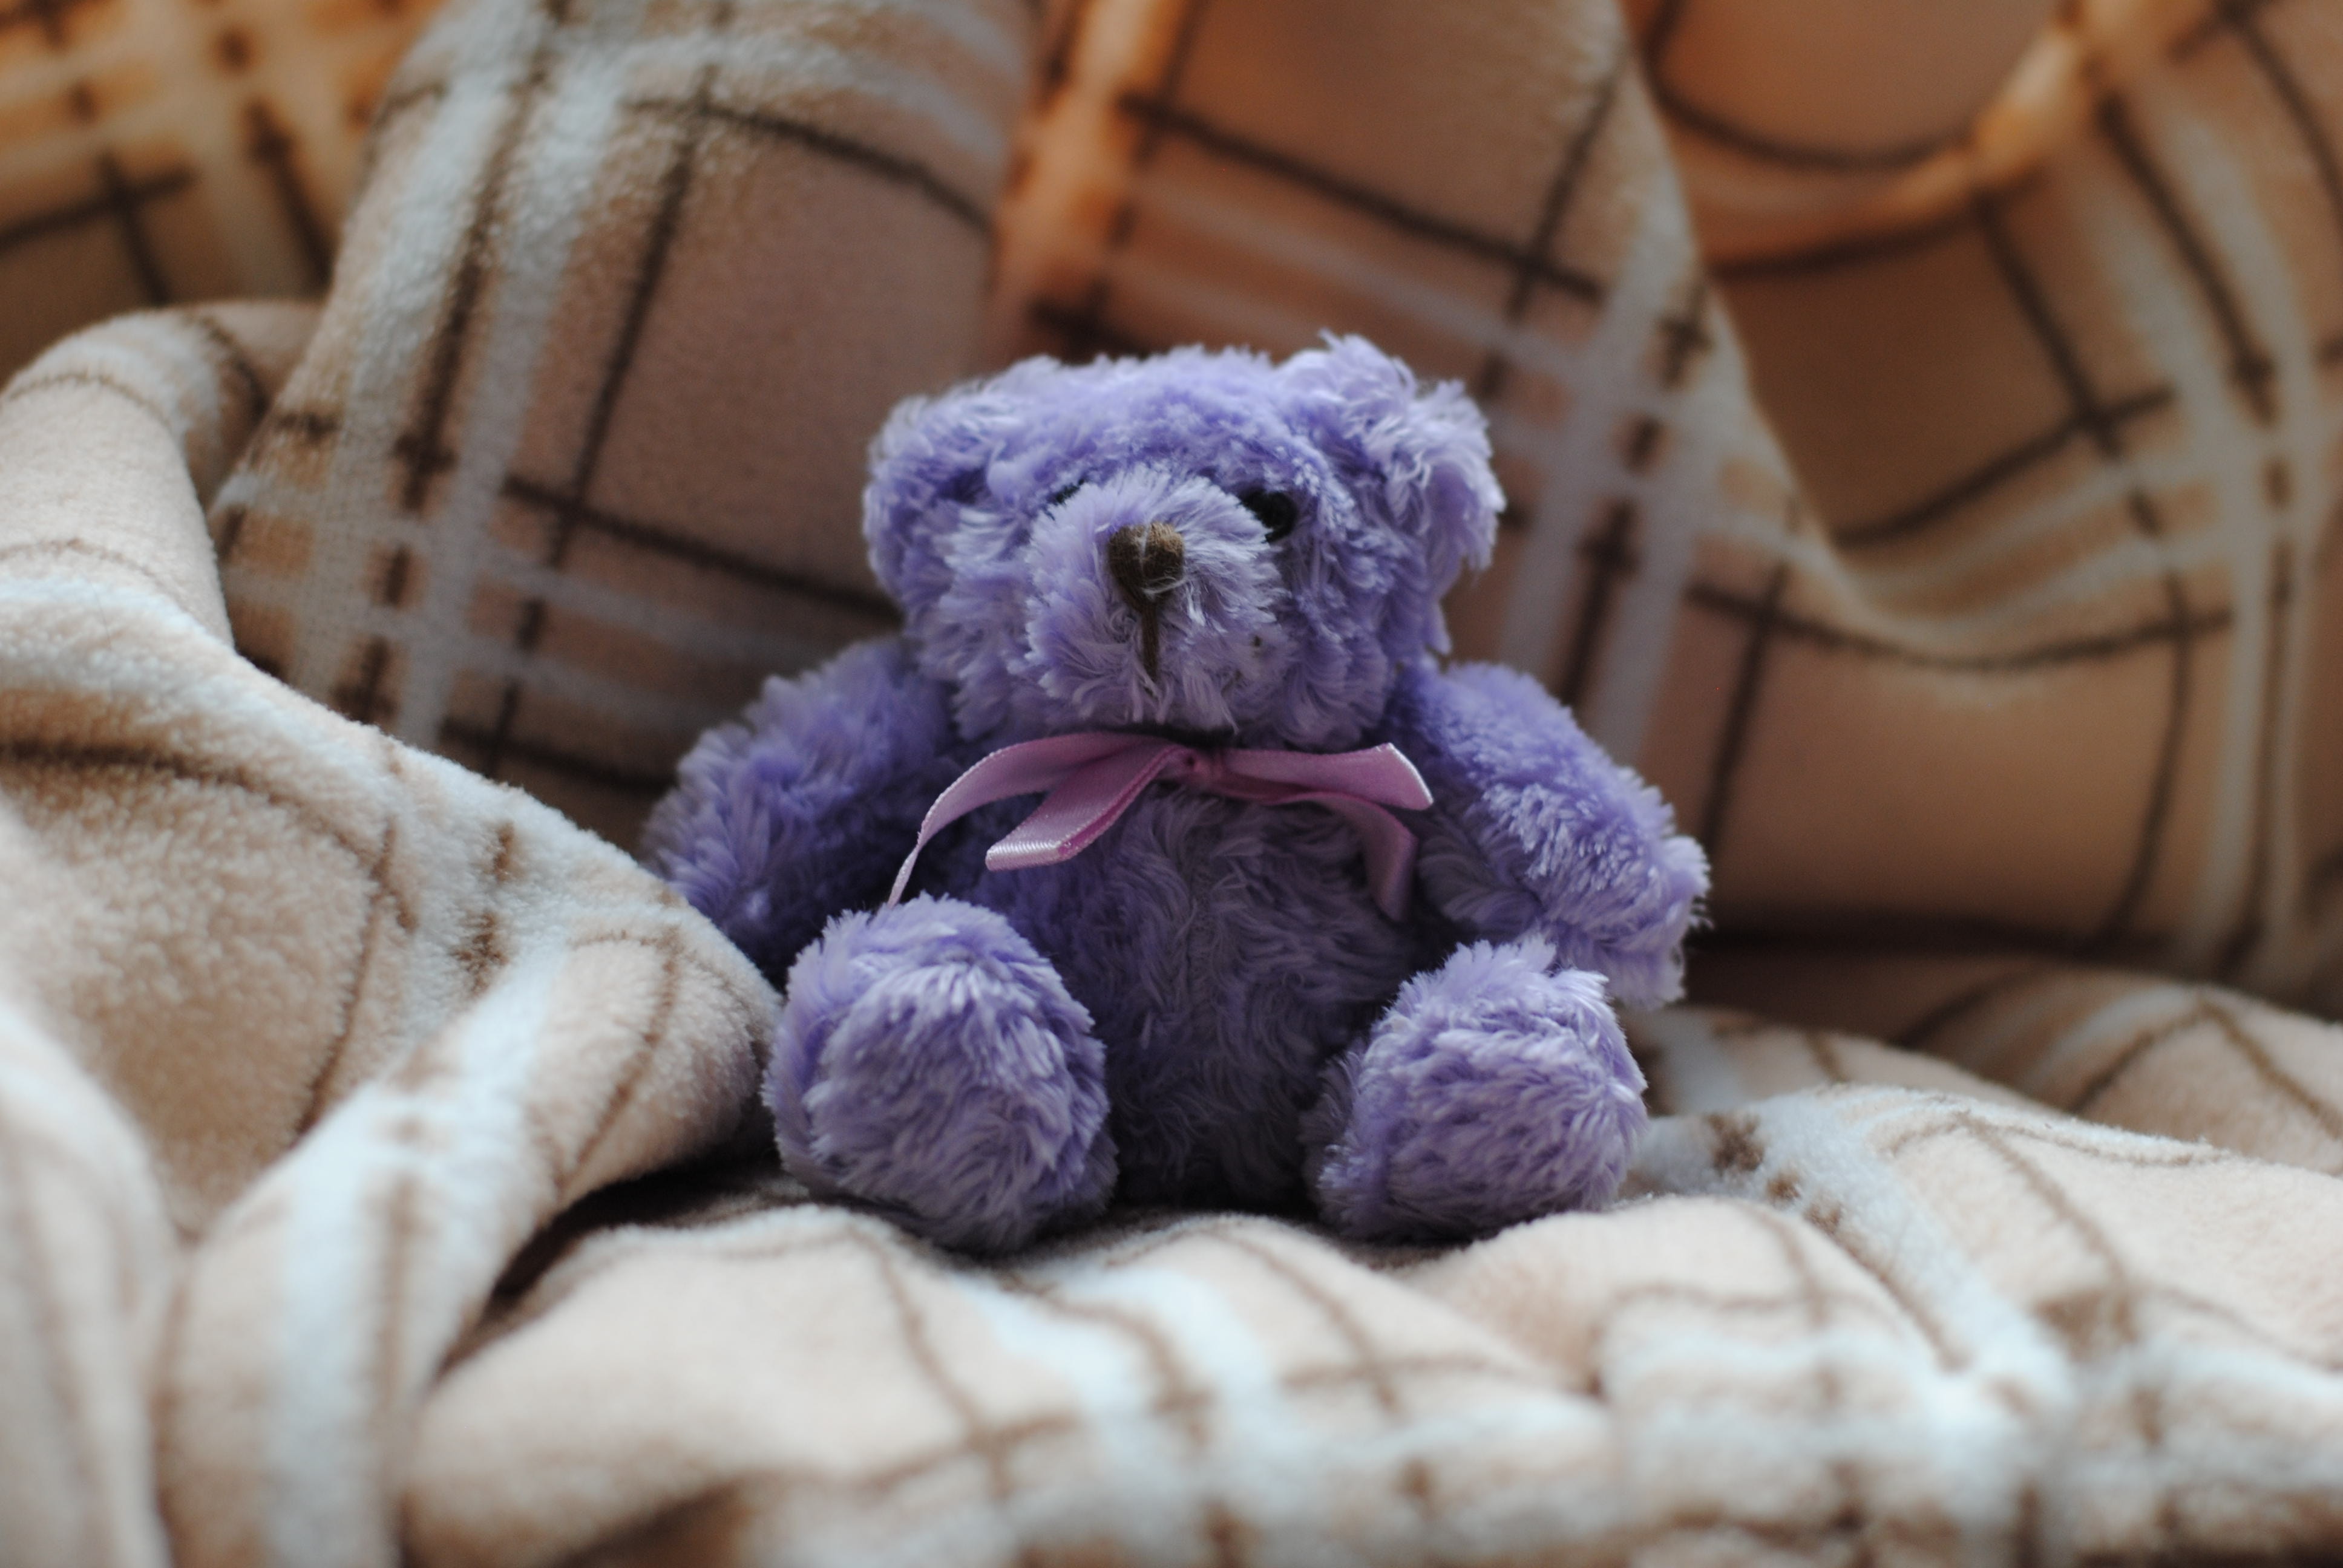 Teddy bear in blanket